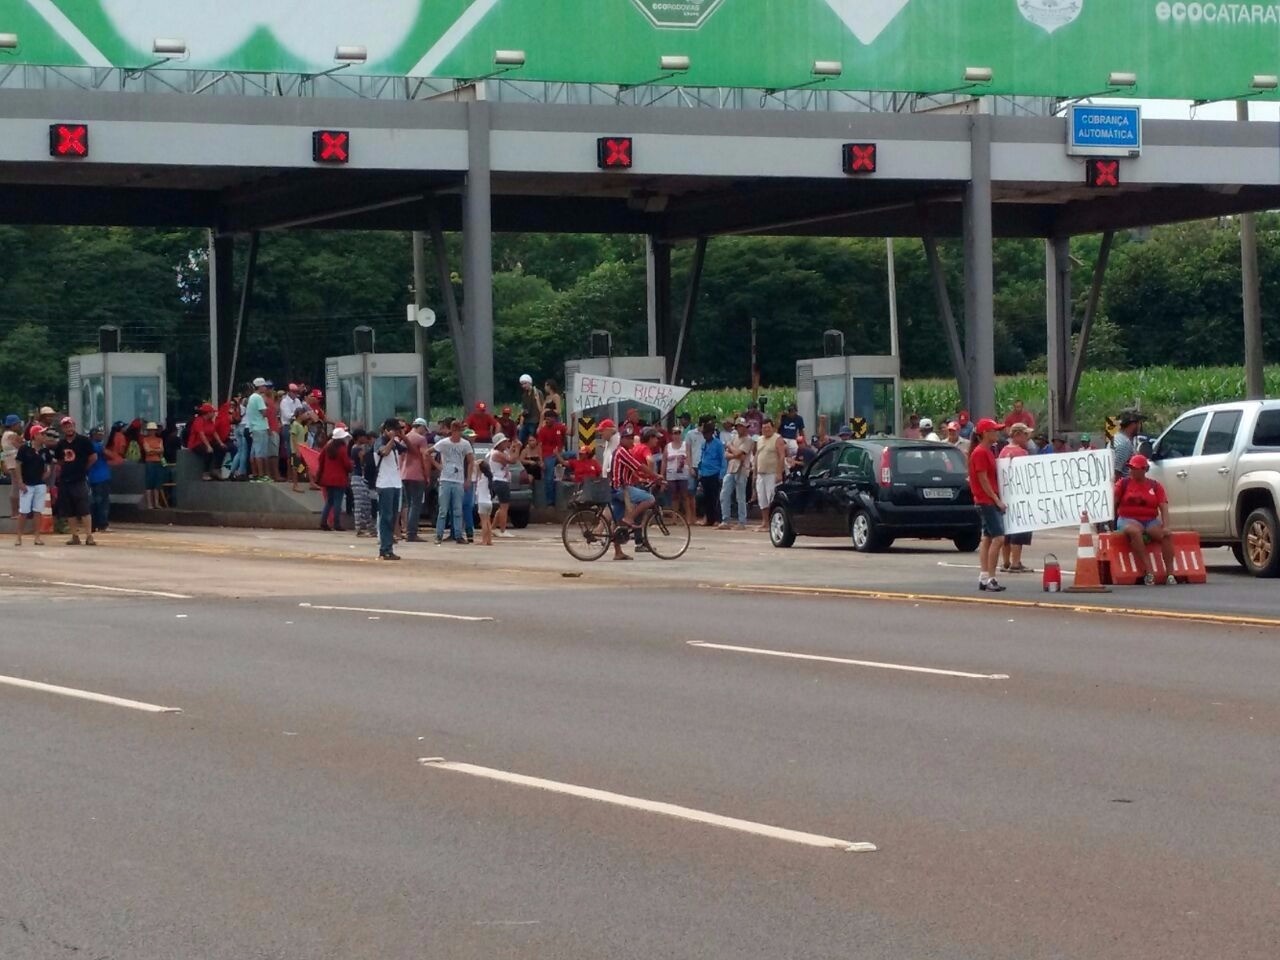 Cerca de mil manifestantes do Movimento dos Trabalhadores Rurais Sem Terra (MST) invadiram, neste sábado (9), a praça de pedágio na BR-277 - Foto: www.tarobacascavel.com.br